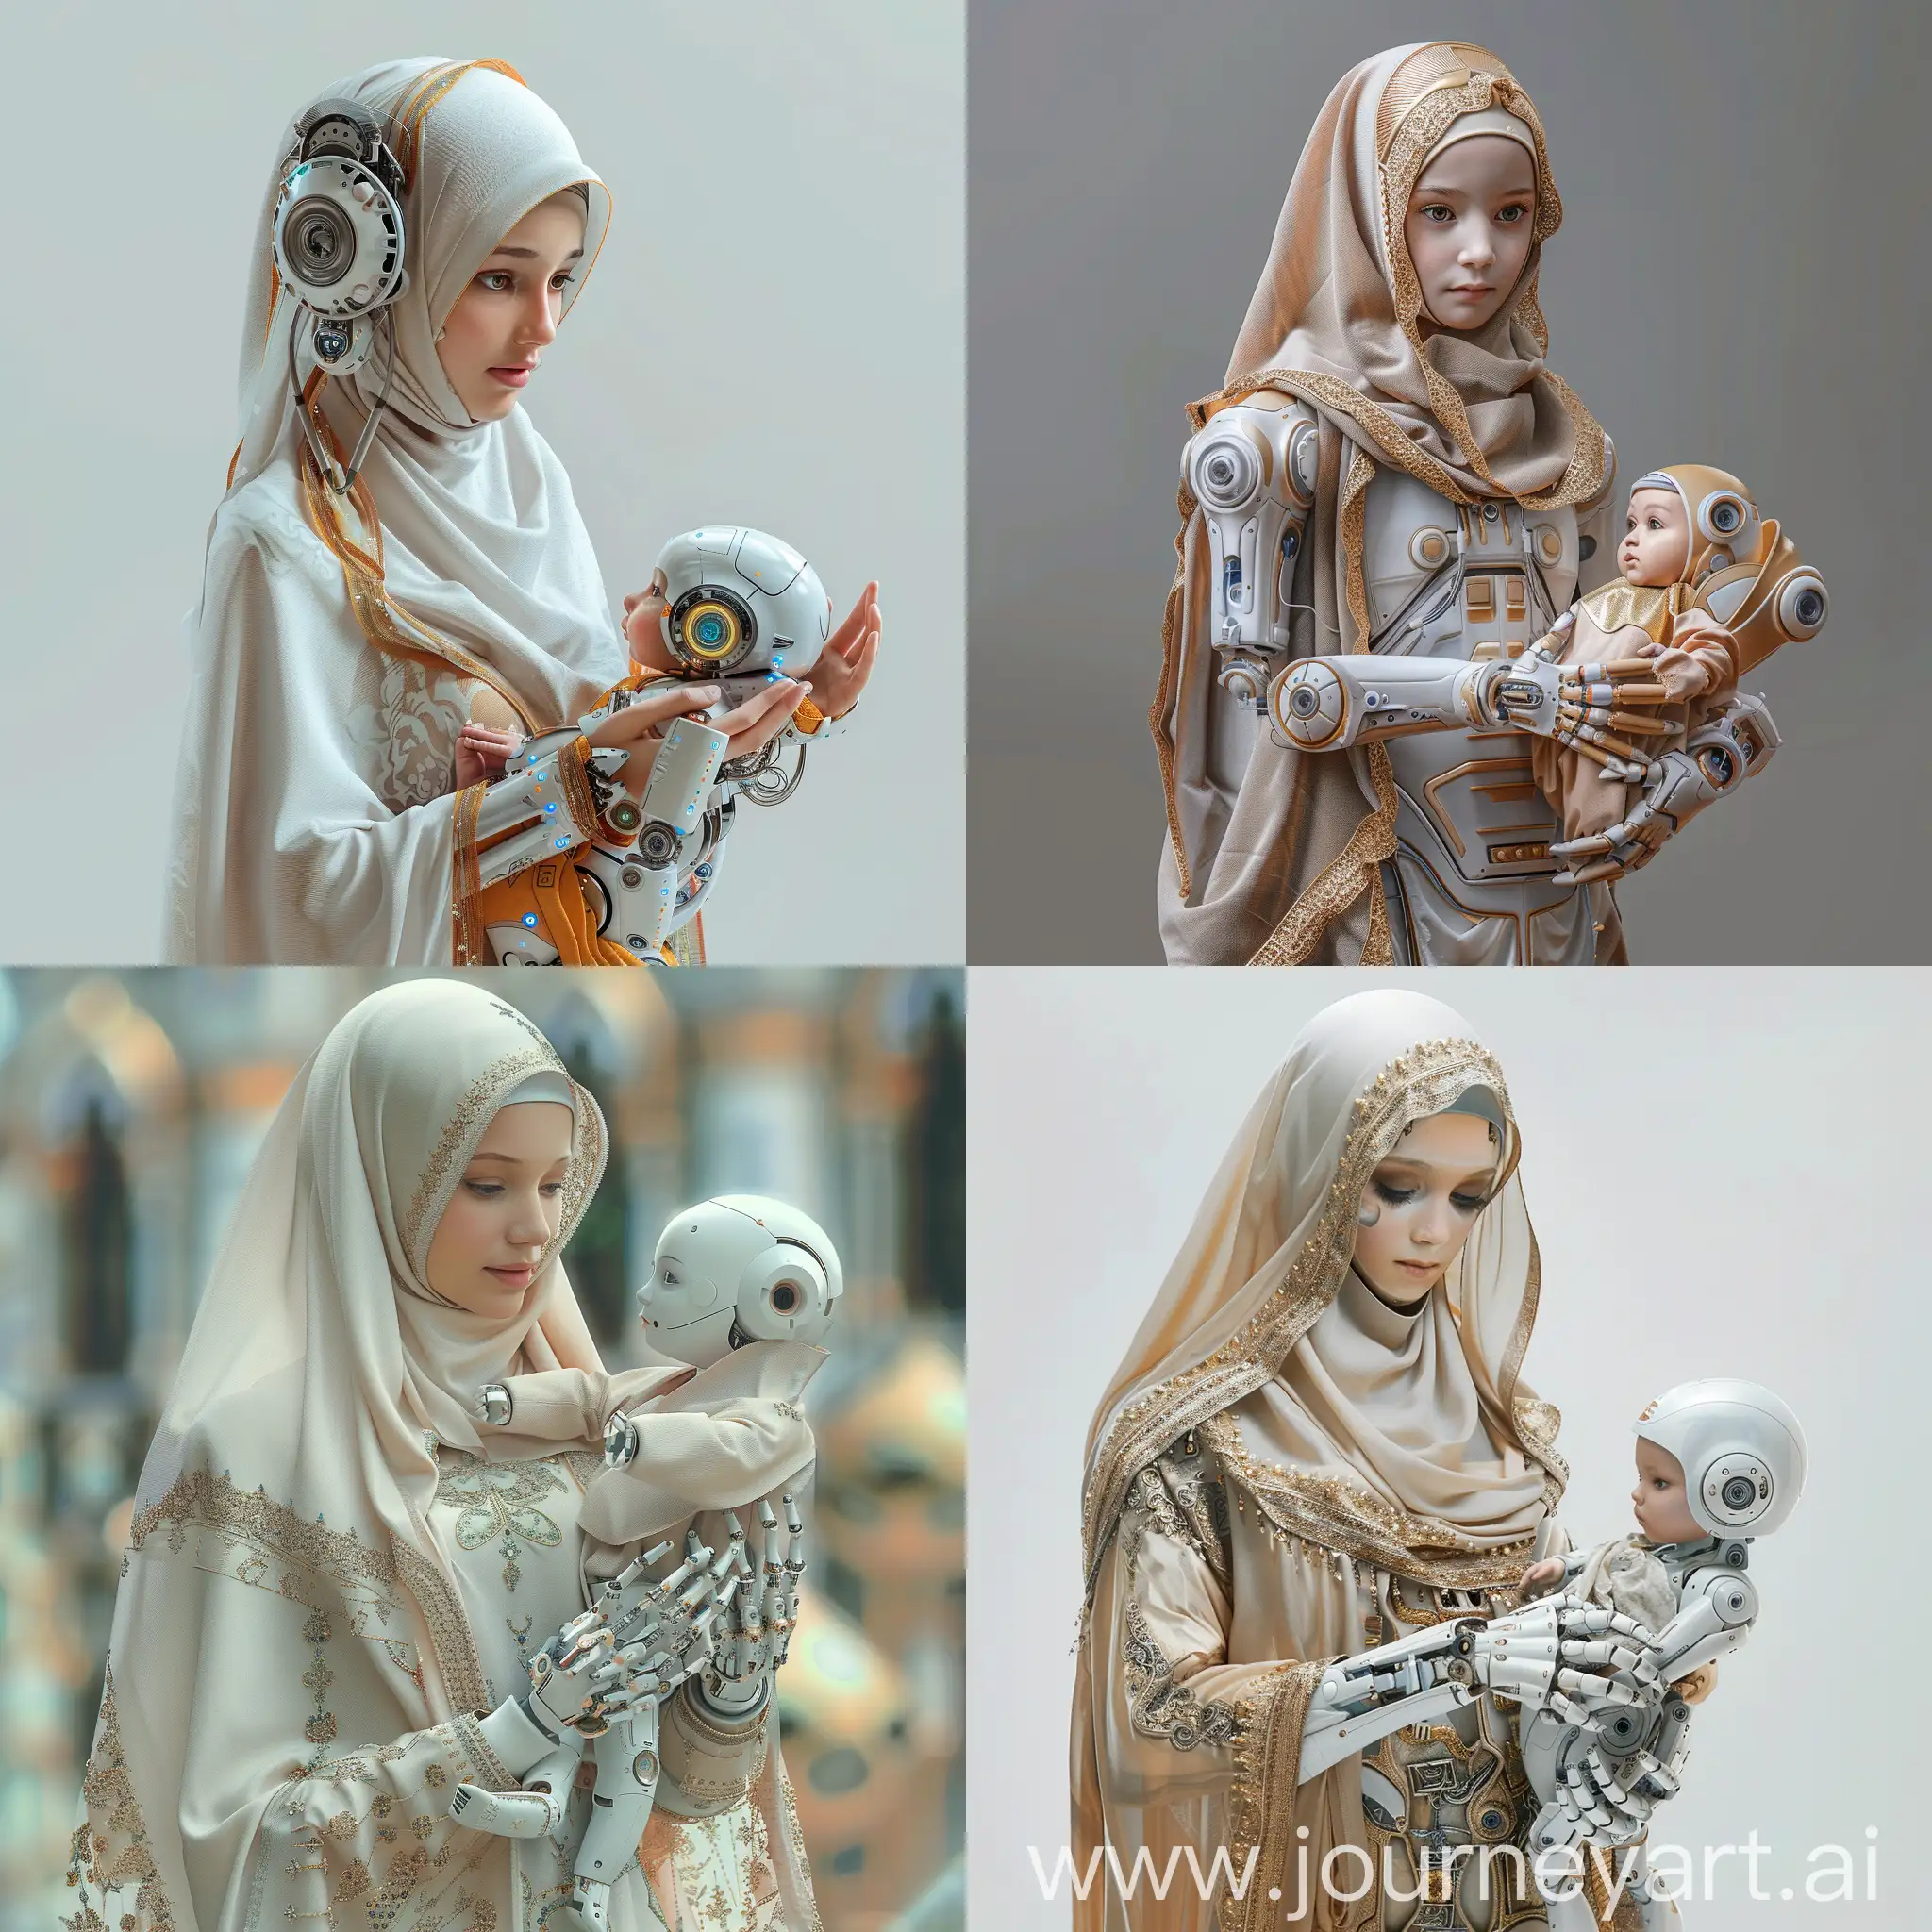 Hyperrealistic-Robotic-Muslim-Girl-with-Robot-Baby